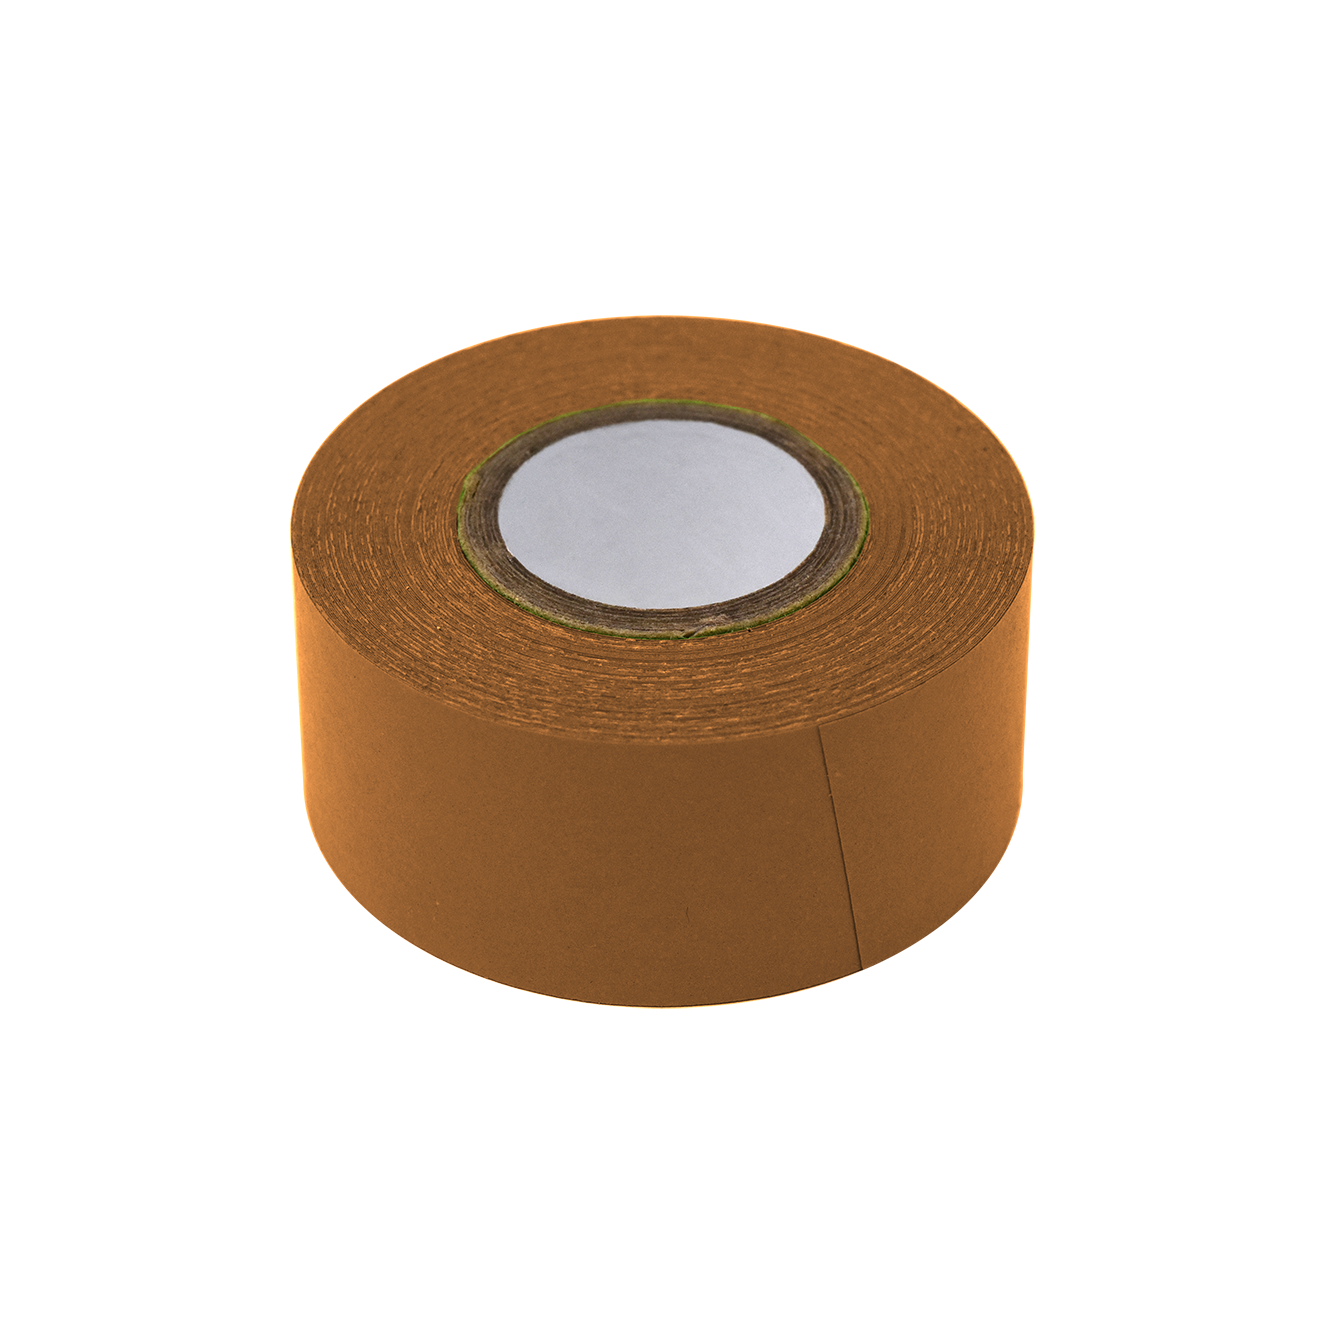 Globe Scientific Labeling Tape, 1" x 500" per Roll, 3 Rolls/Box, Copper  